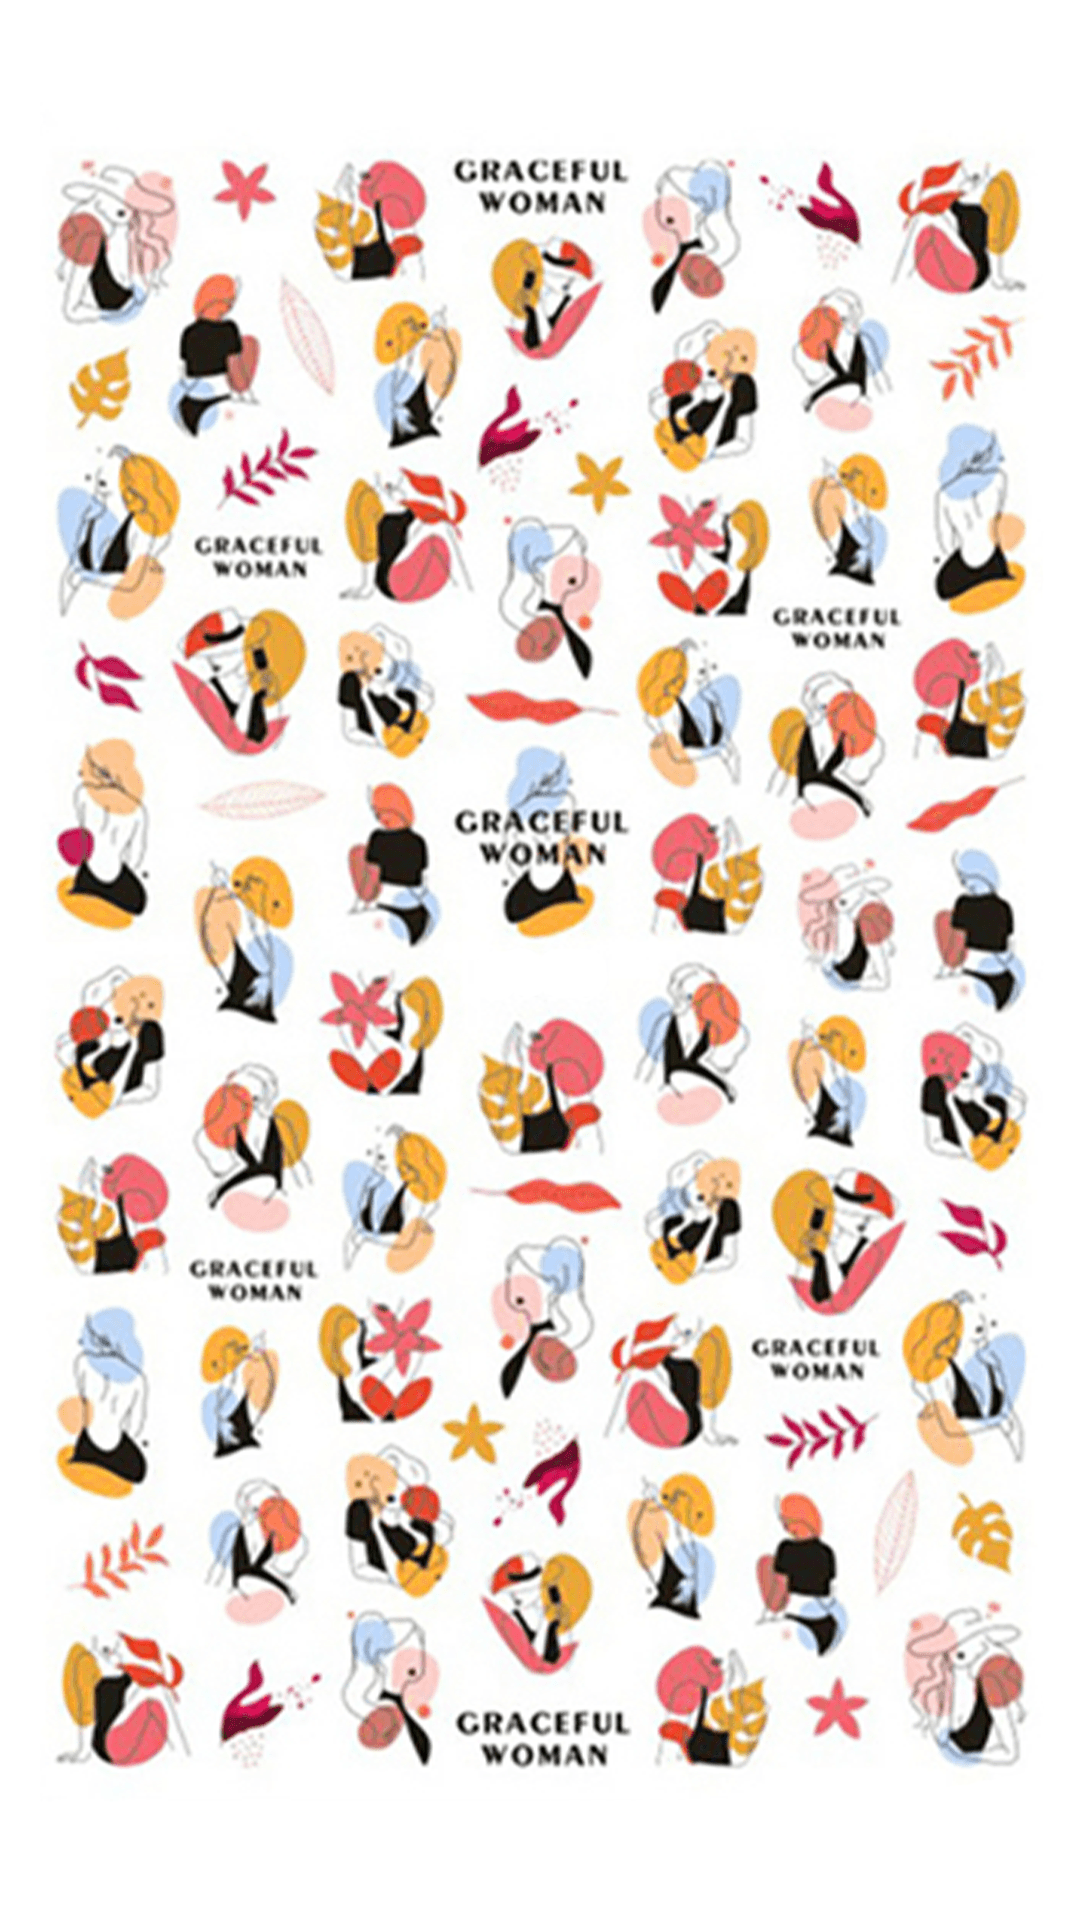 GRACEFUL WOMAN - Stickers decorazioni unghie per nail art raffiguranti donne